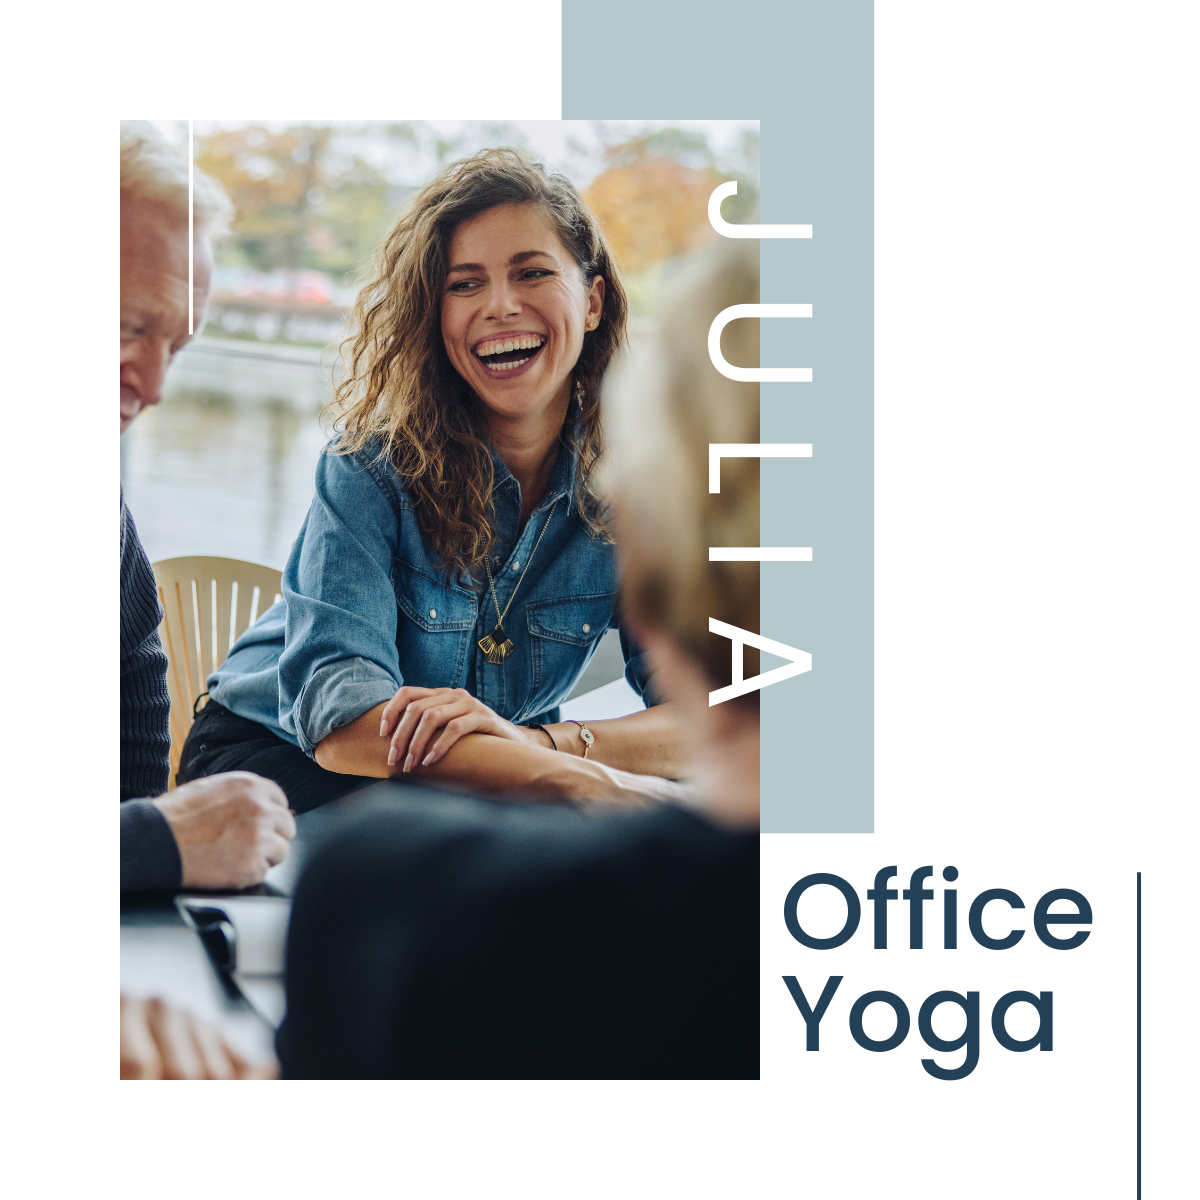 Office Yoga Team Julia